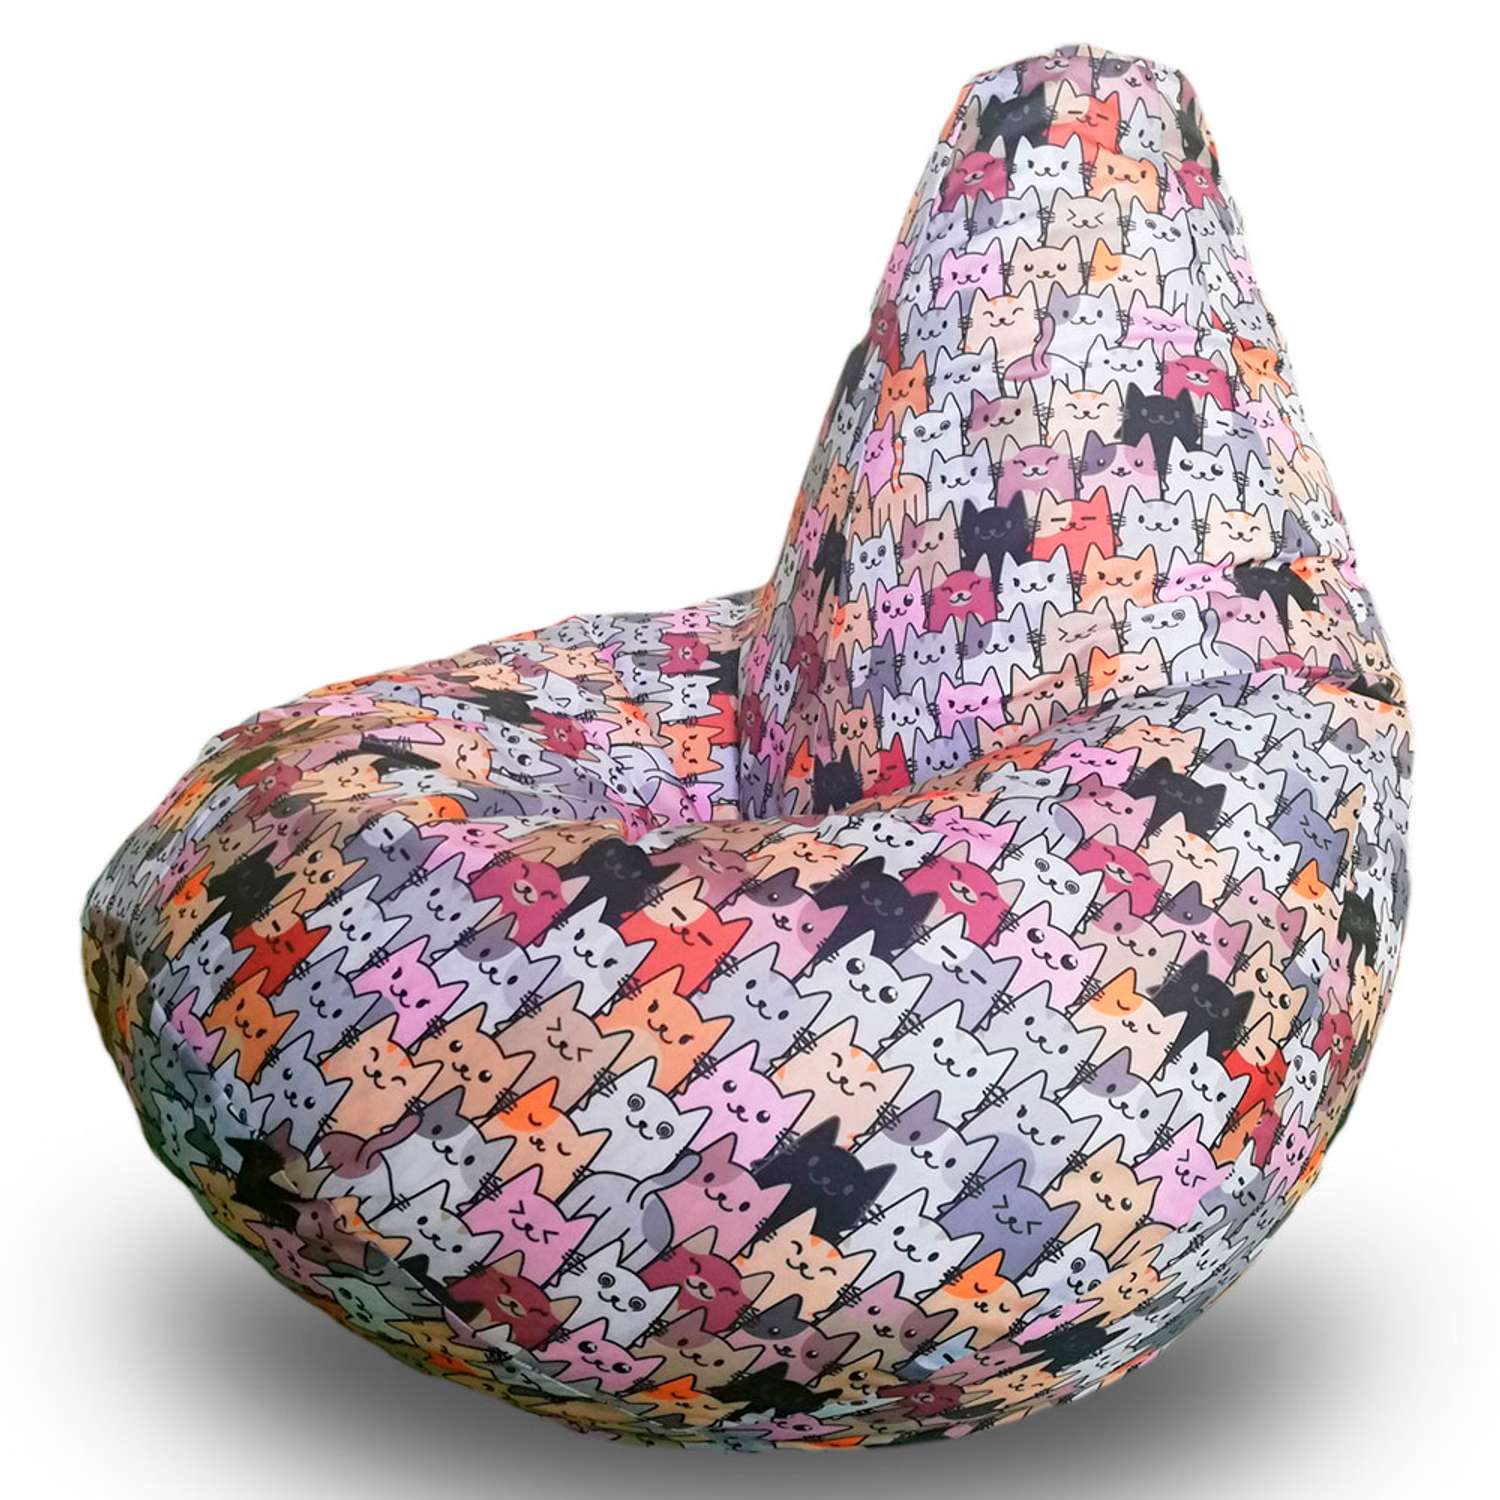 Кресло-мешок груша Bean Joy размер XL оксфорд принт - фото 1